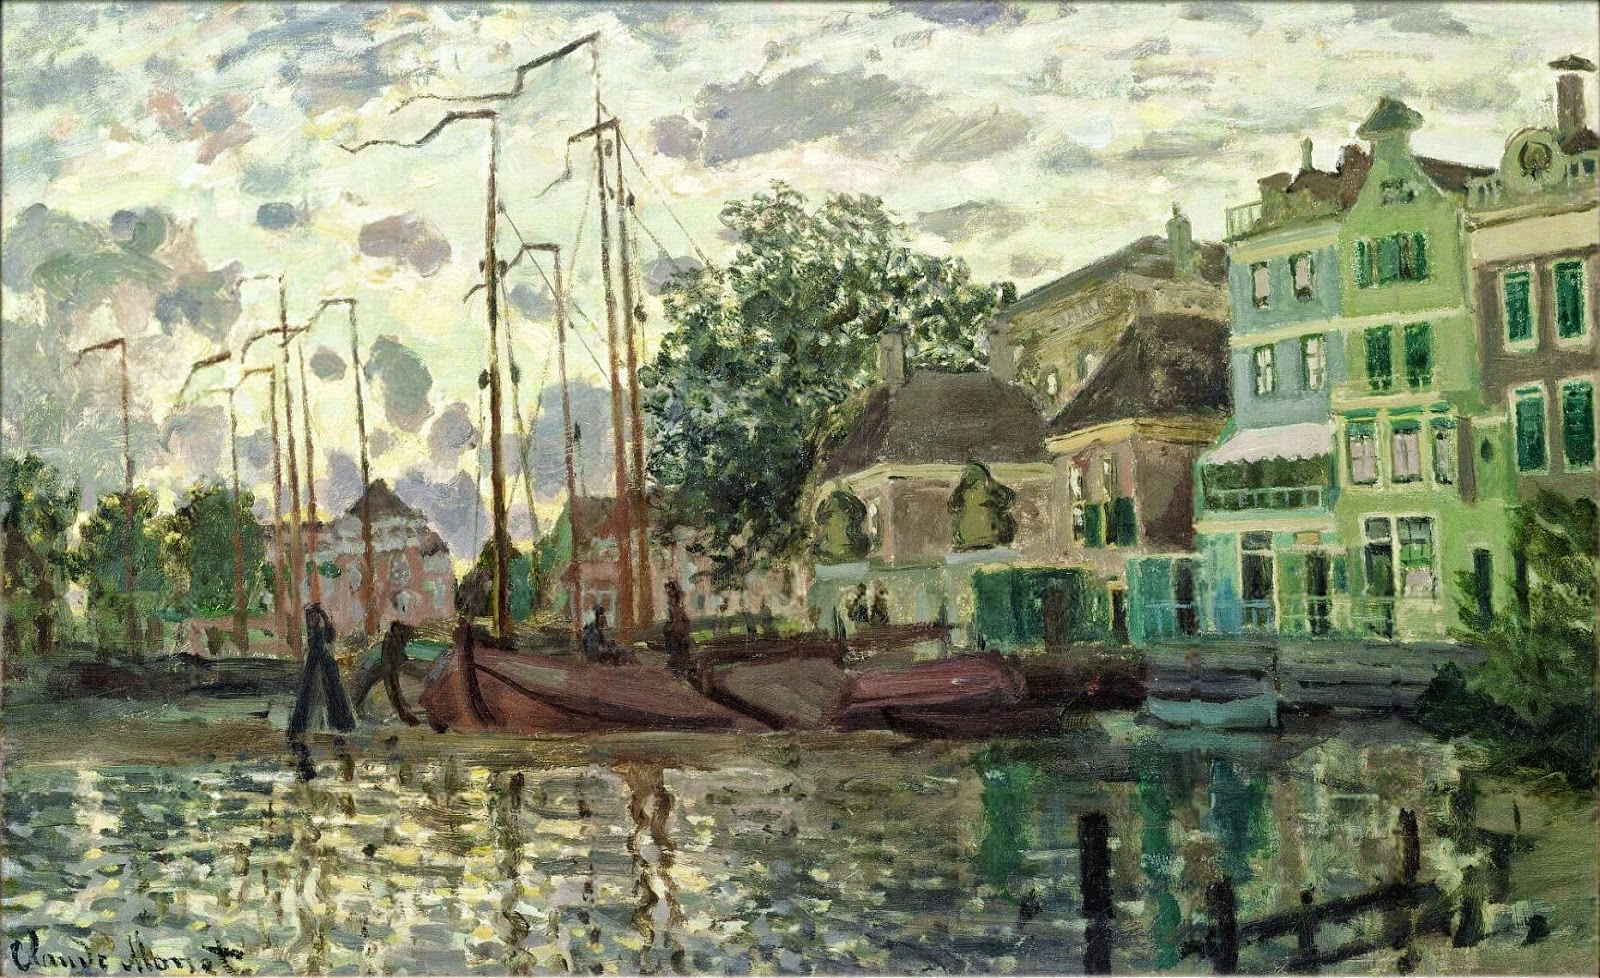 Claude+Monet-1840-1926 (374).jpeg